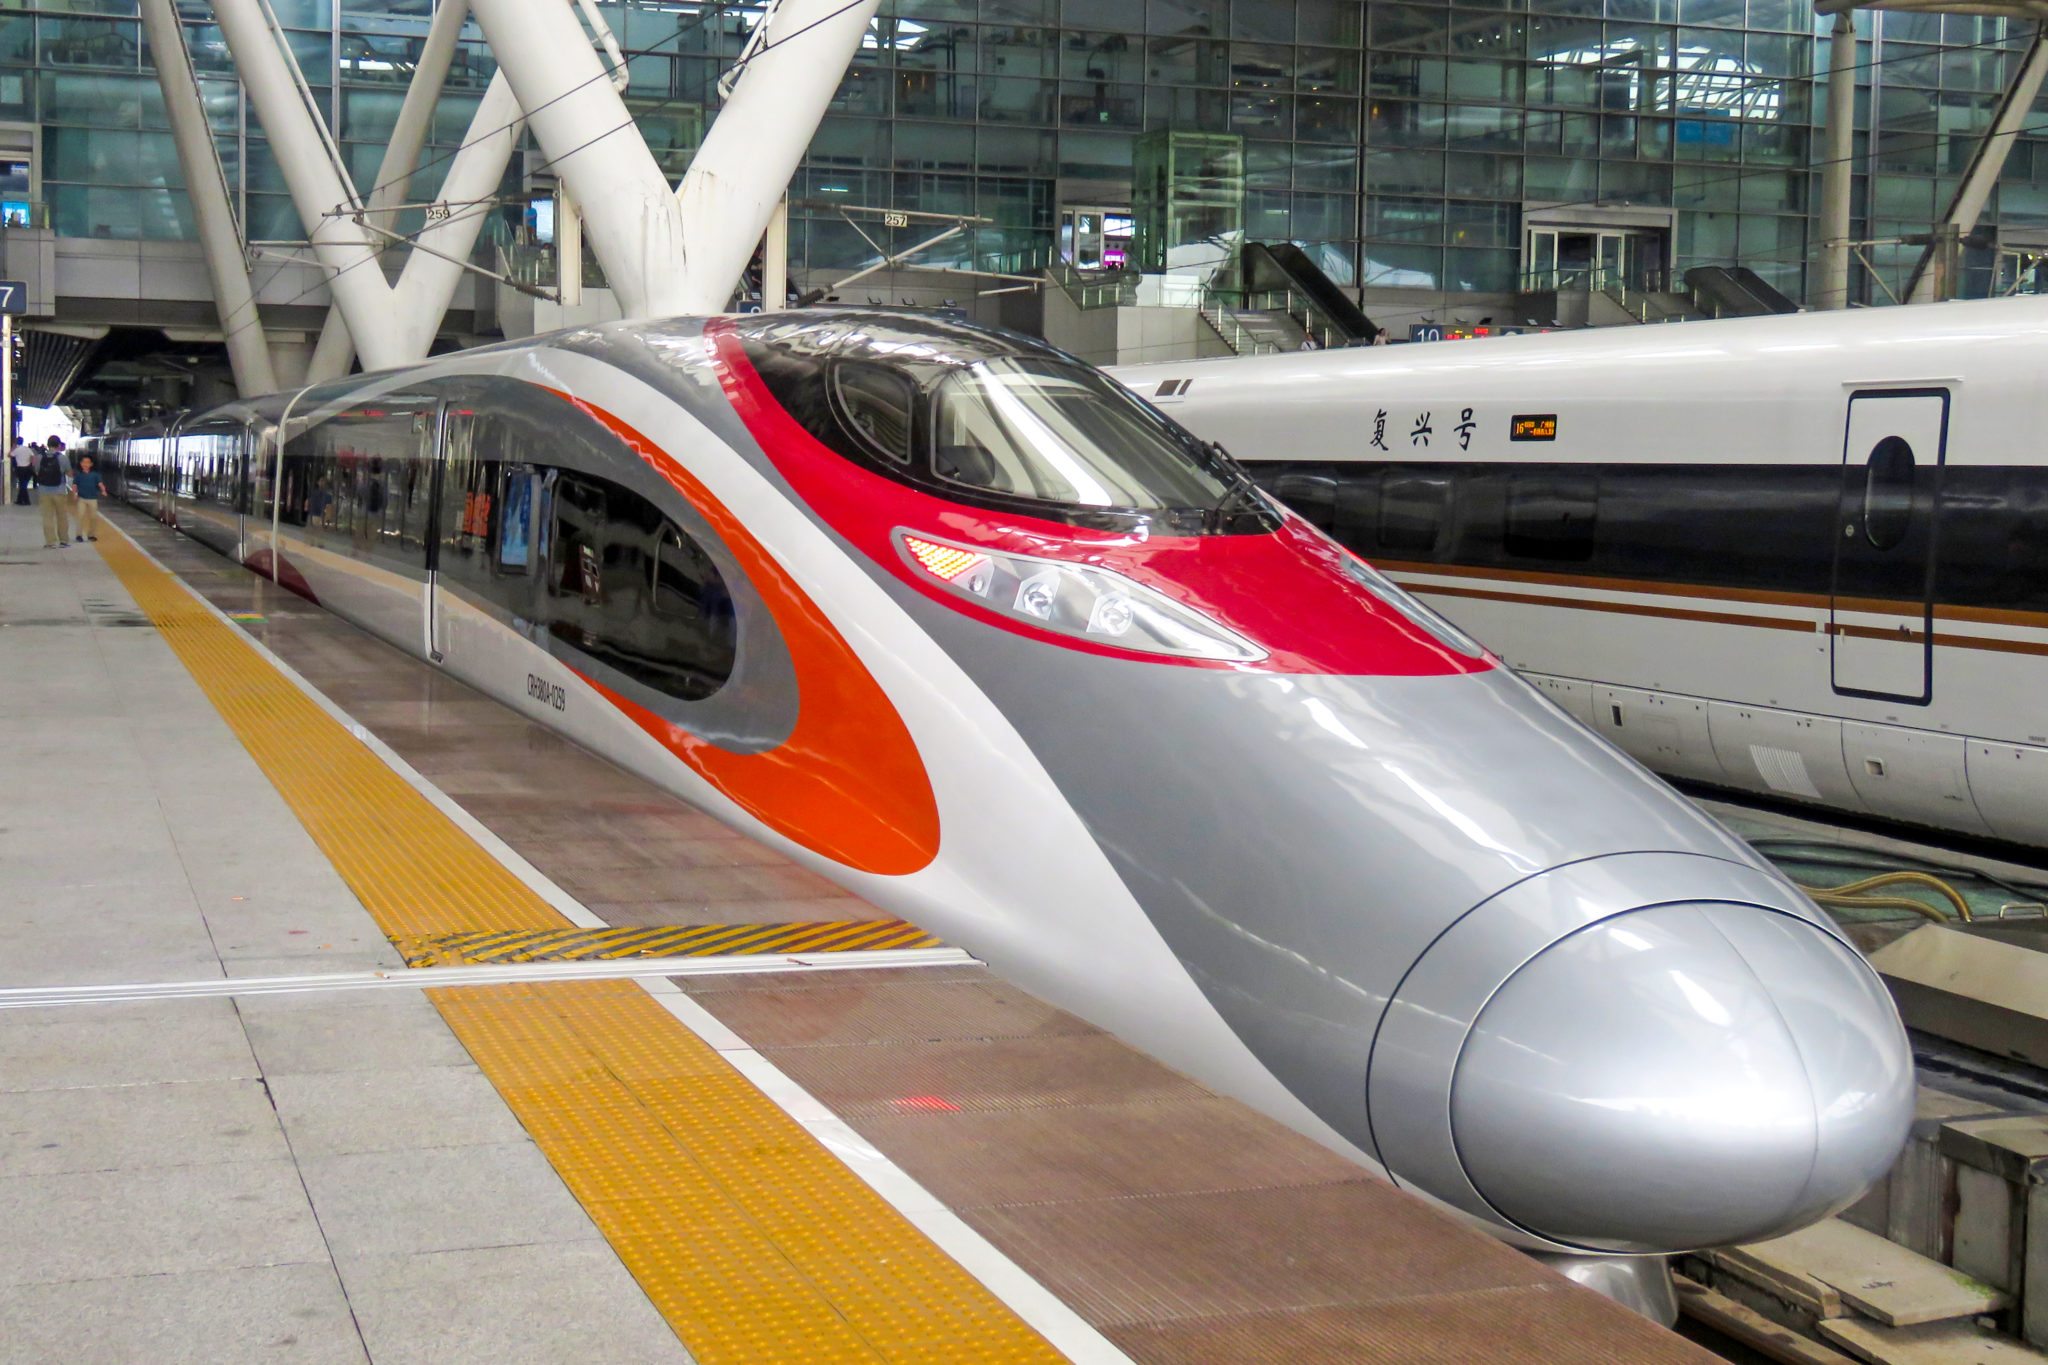 Hong Kong high-speed rail